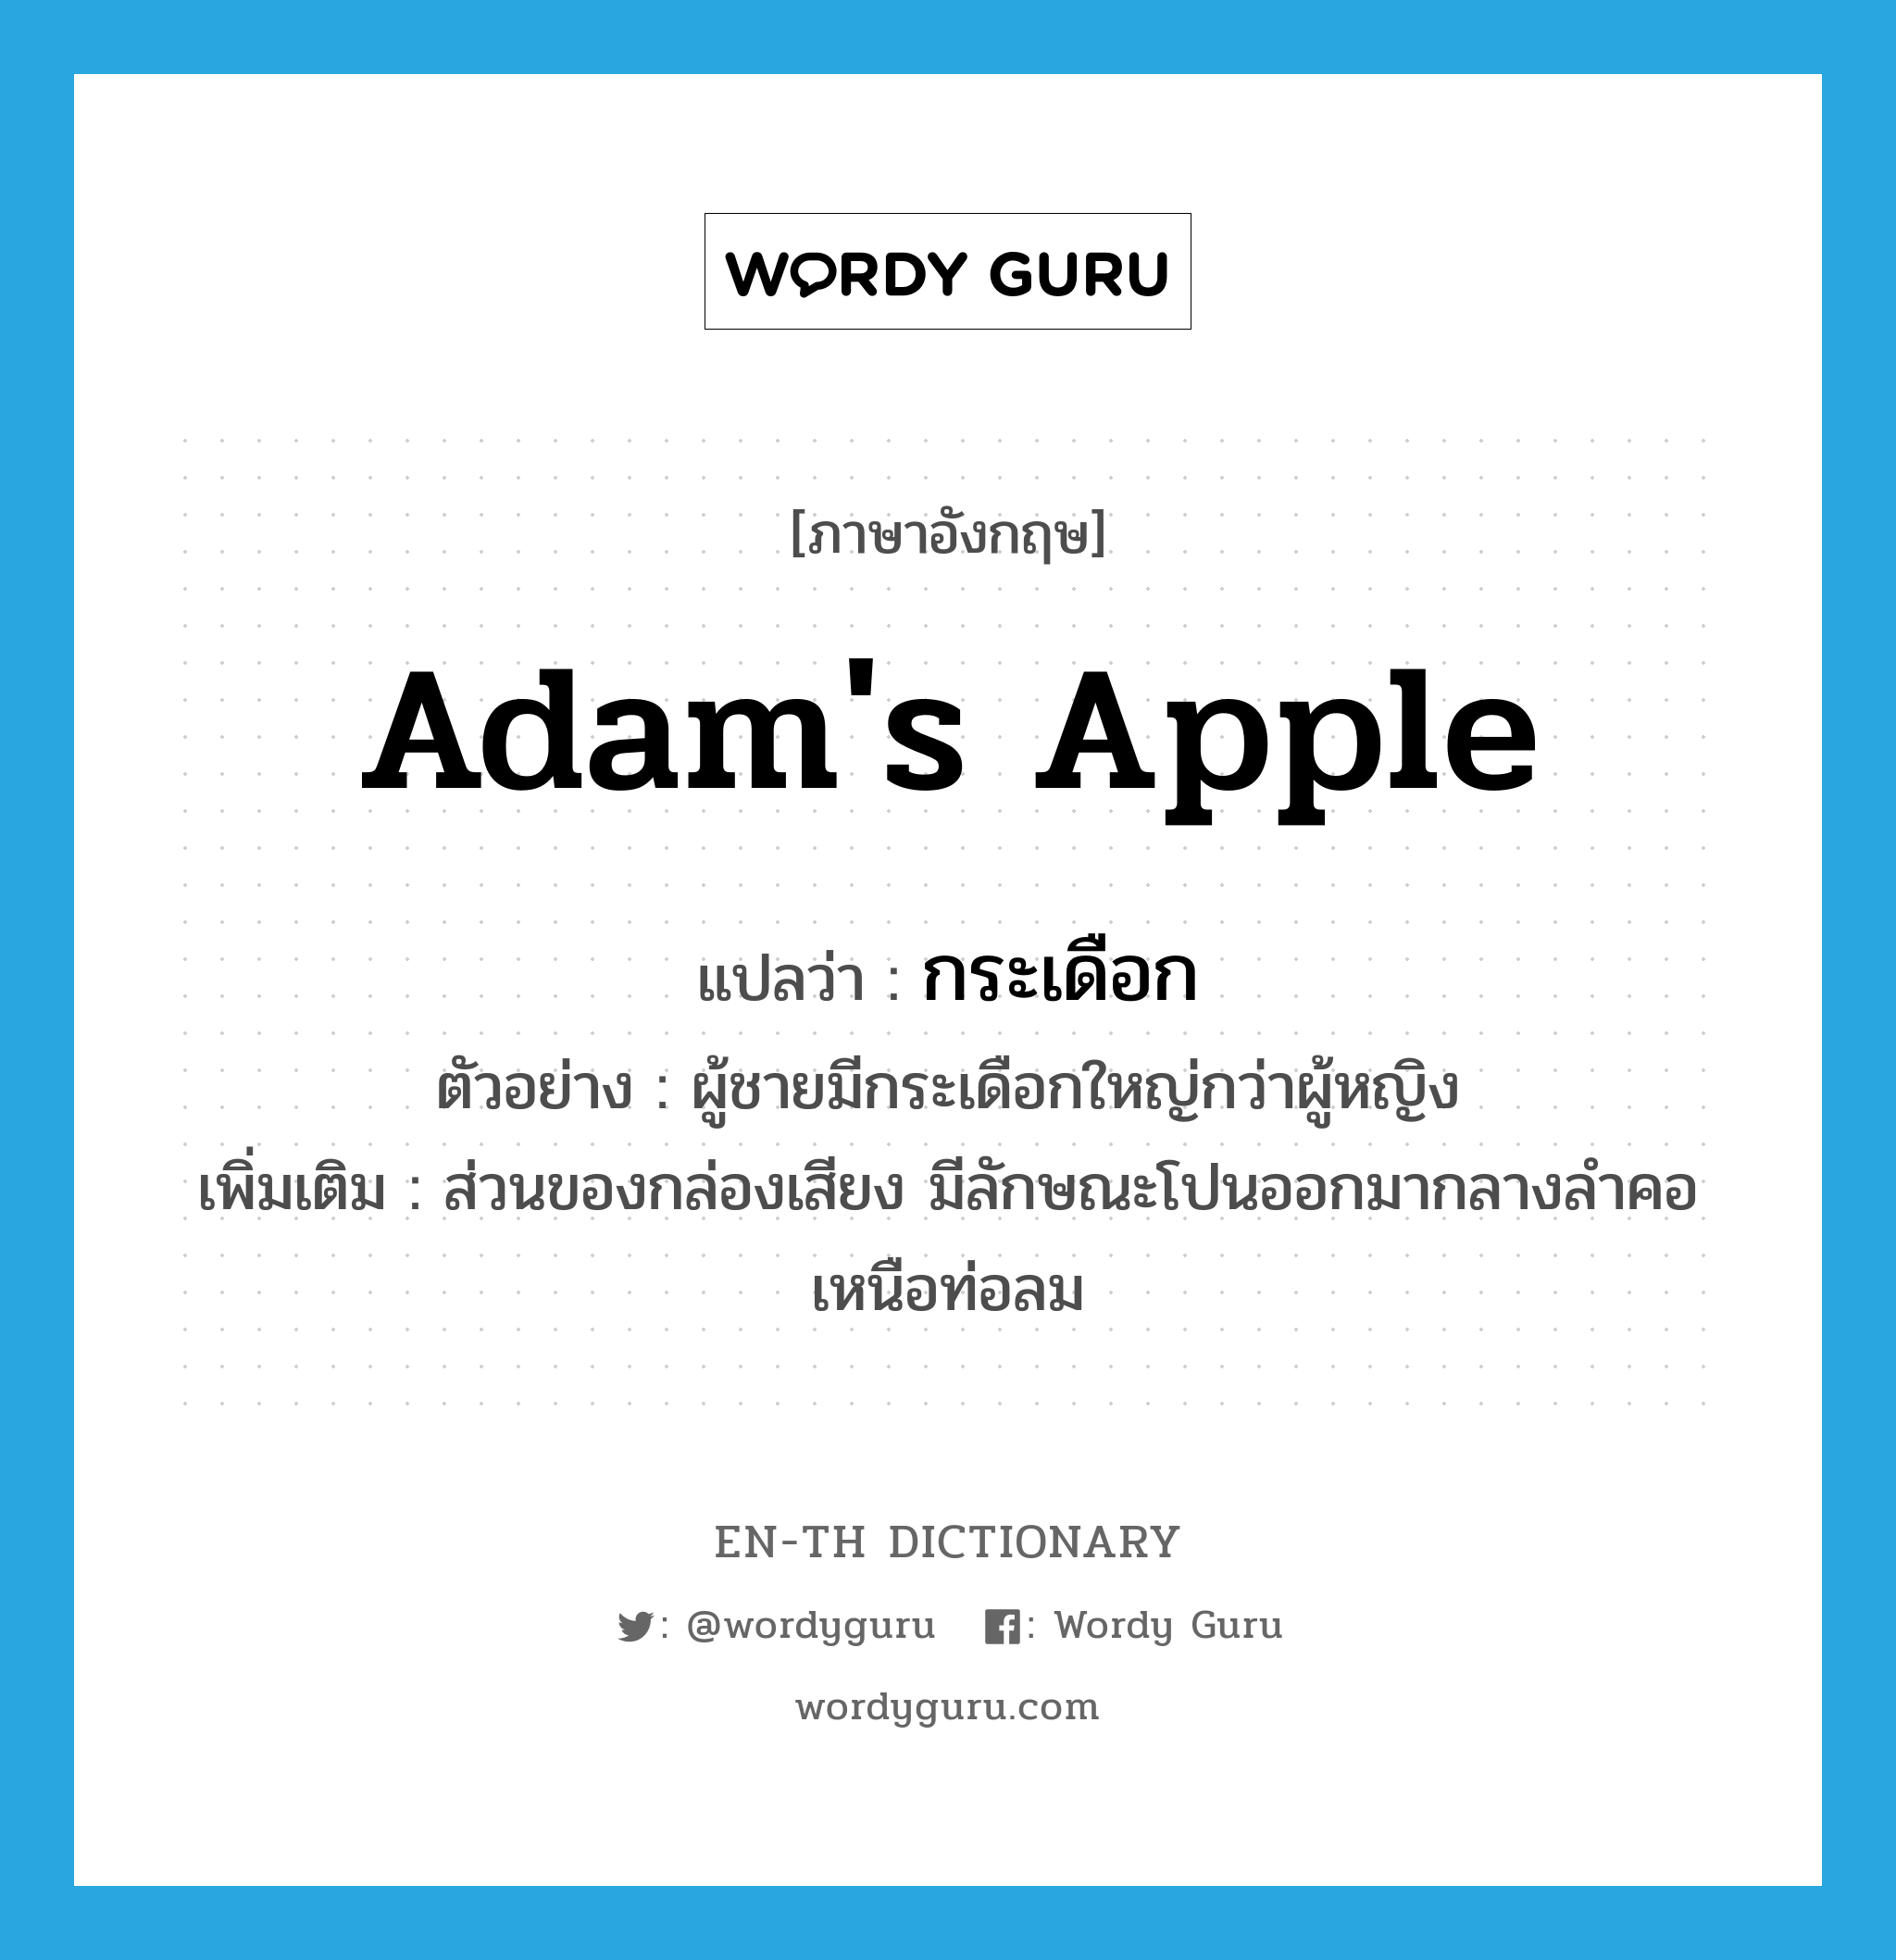 กระเดือก ภาษาอังกฤษ?, คำศัพท์ภาษาอังกฤษ กระเดือก แปลว่า Adam's apple ประเภท N ตัวอย่าง ผู้ชายมีกระเดือกใหญ่กว่าผู้หญิง เพิ่มเติม ส่วนของกล่องเสียง มีลักษณะโปนออกมากลางลำคอเหนือท่อลม หมวด N